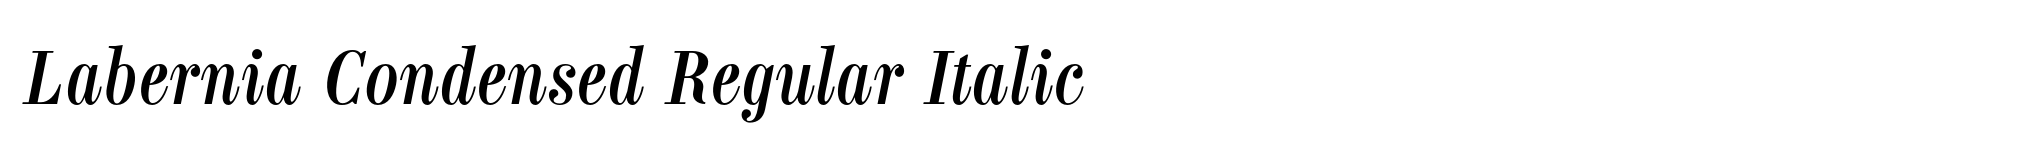 Labernia Condensed Regular Italic image